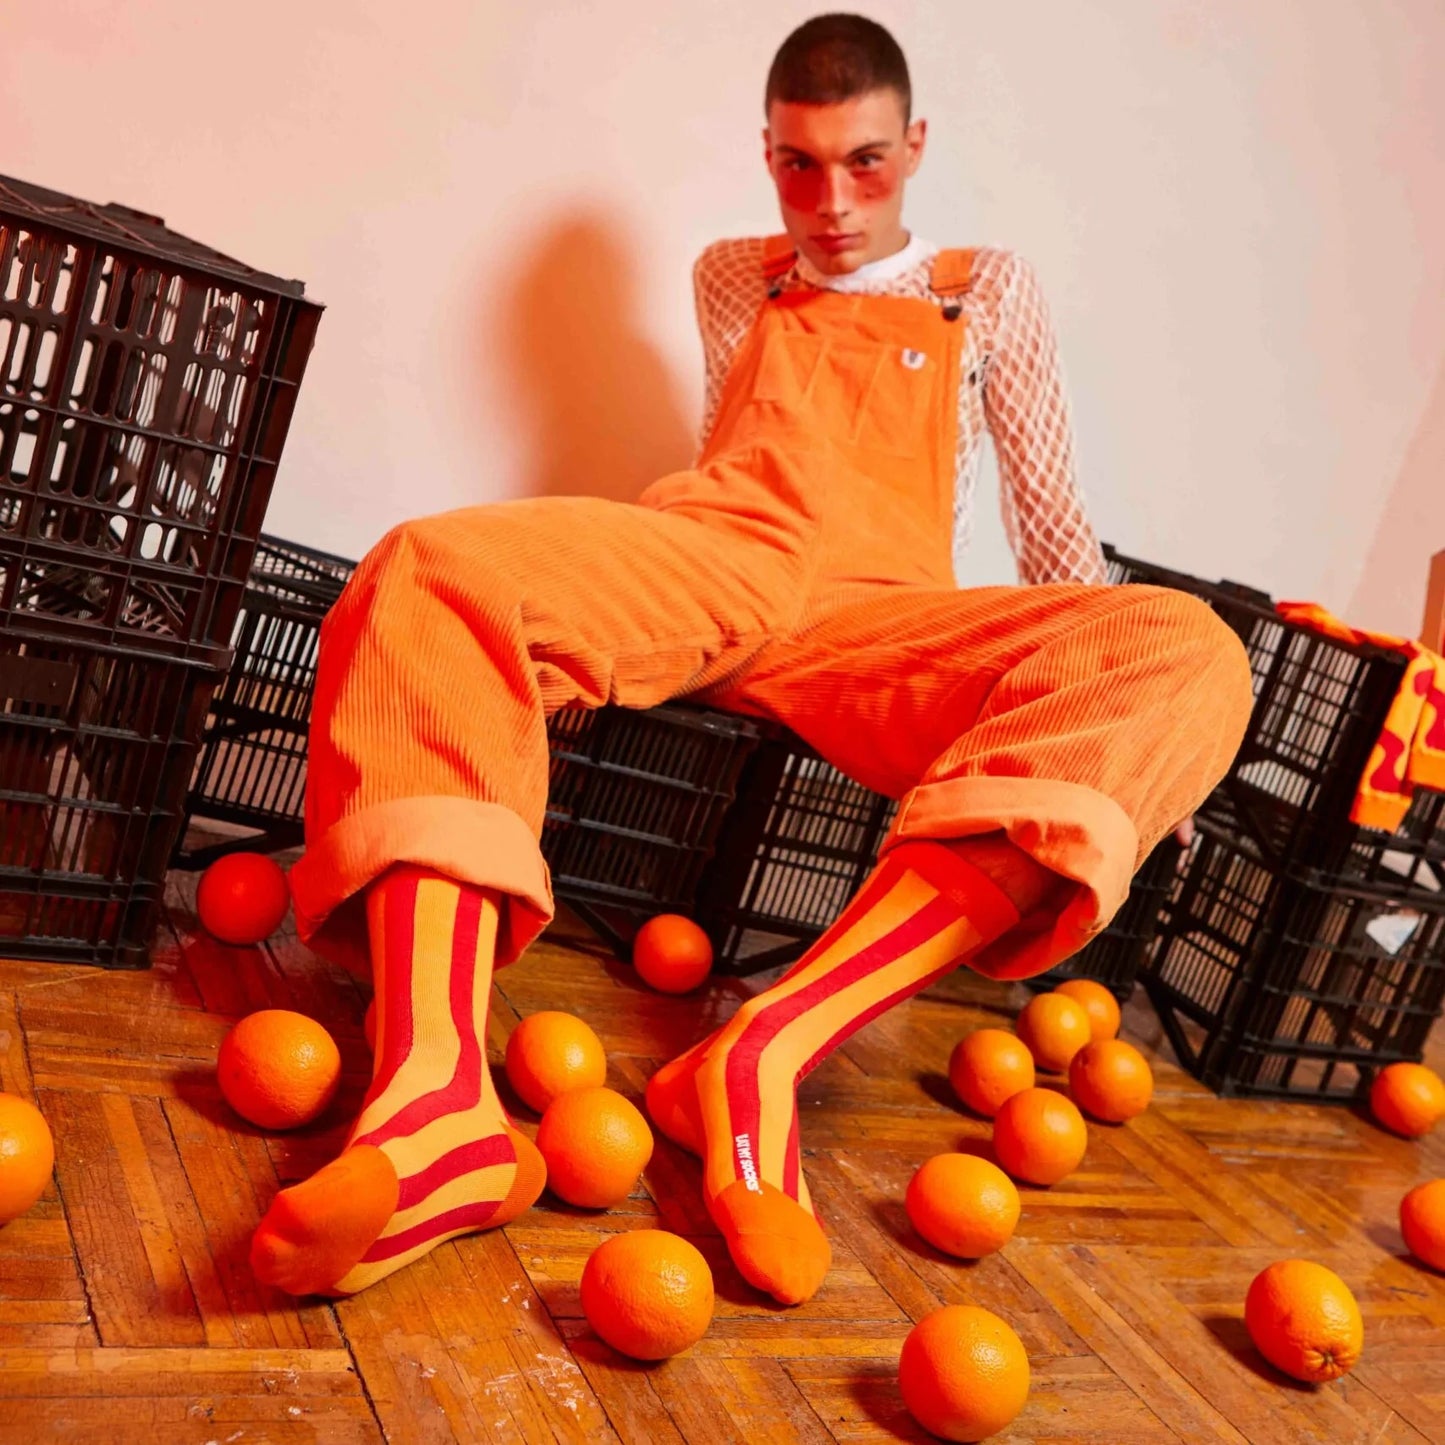 modelo posando con los calcetines de naranjas de doiy EMS sobre cajas de naranjas y con naranjas por el suelo, llevando un peto también de color naranja